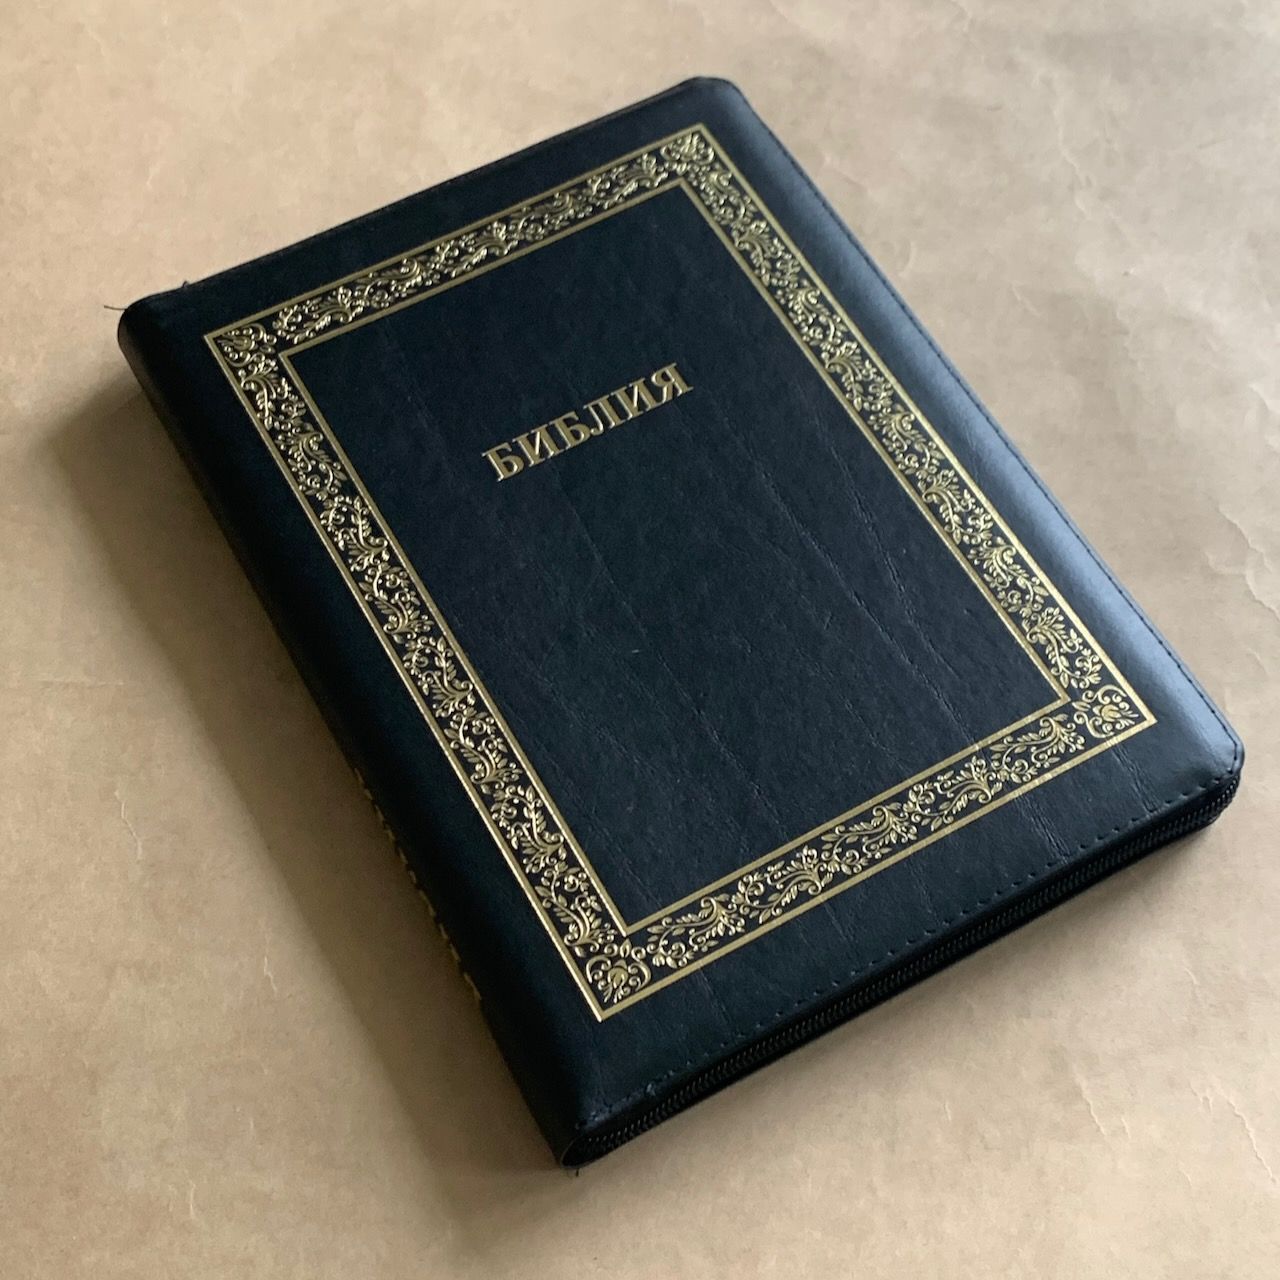 Библия 076z код B9, дизайн "золотая рамка растительный орнамент", кожаный переплет на молнии, цвет черный с прожилками, размер 180x243 мм